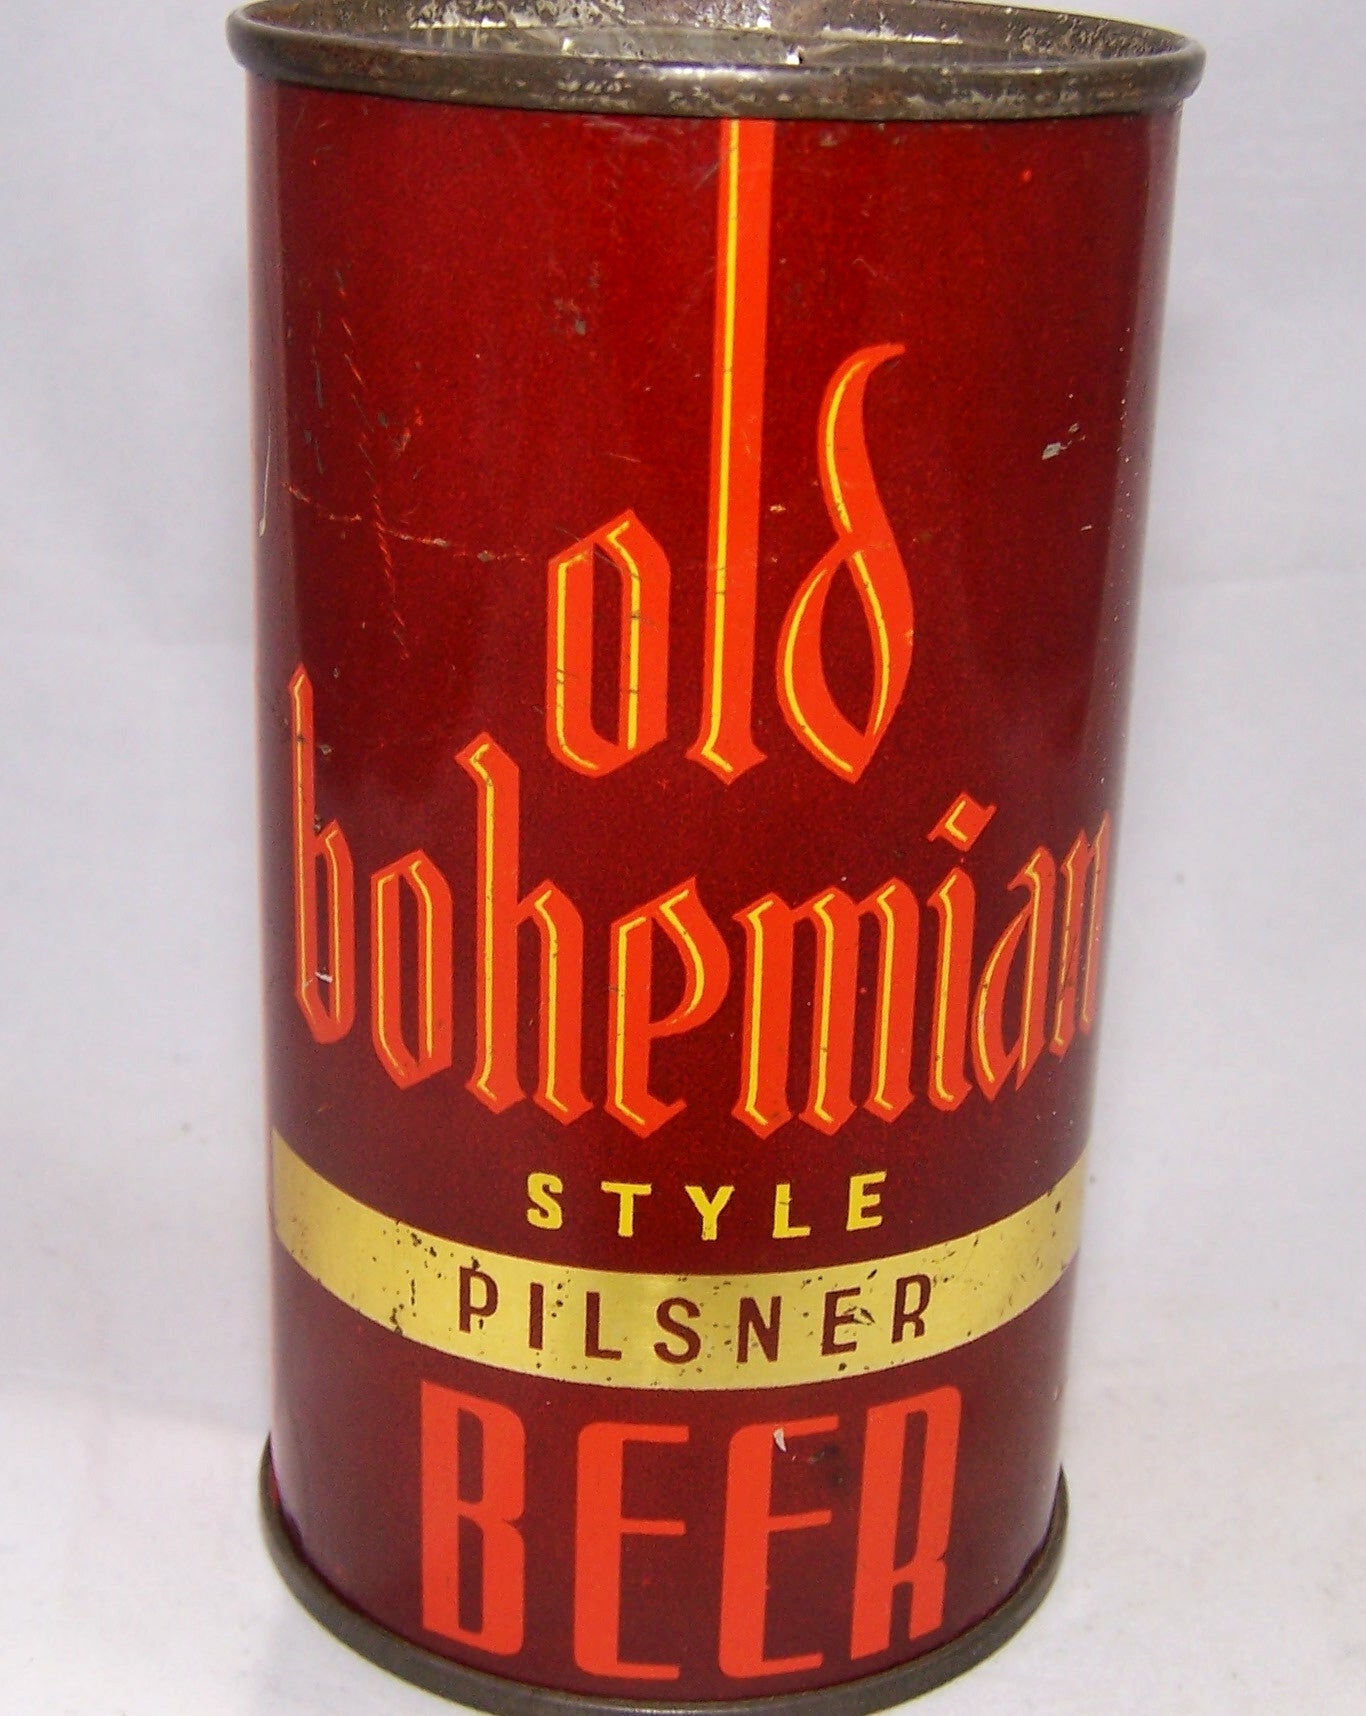 Old Bohemian Pilsner Beer, Lilek #584, Grade 1 sold 3 5 19